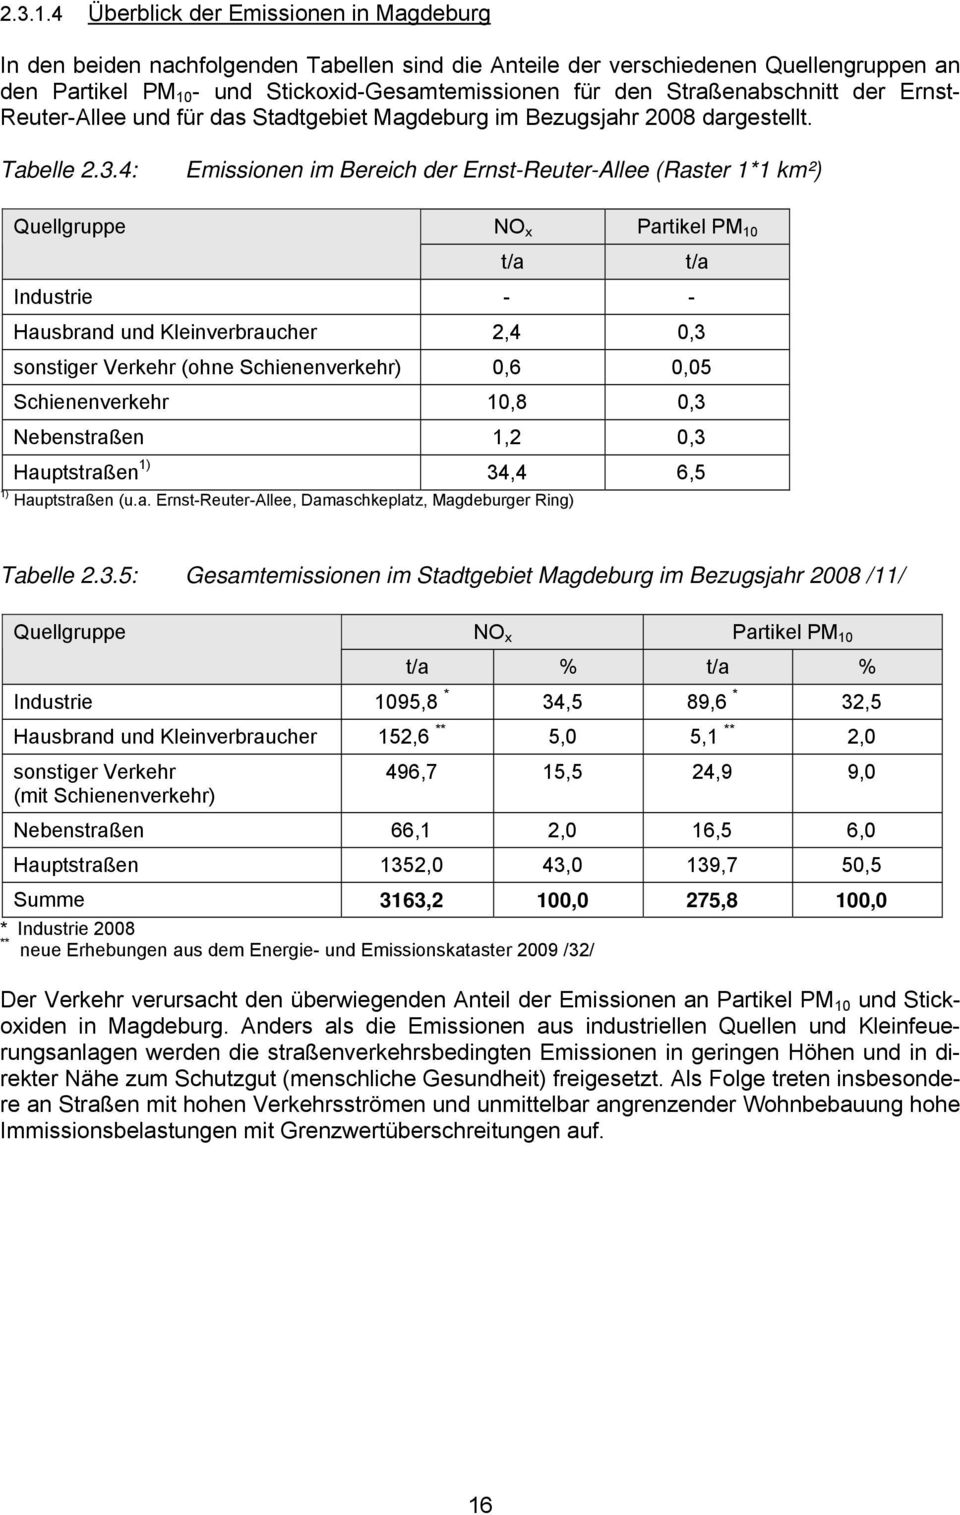 Straßenabschnitt der Ernst- Reuter-Allee und für das Stadtgebiet Magdeburg im Bezugsjahr 2008 dargestellt. Tabelle 2.3.